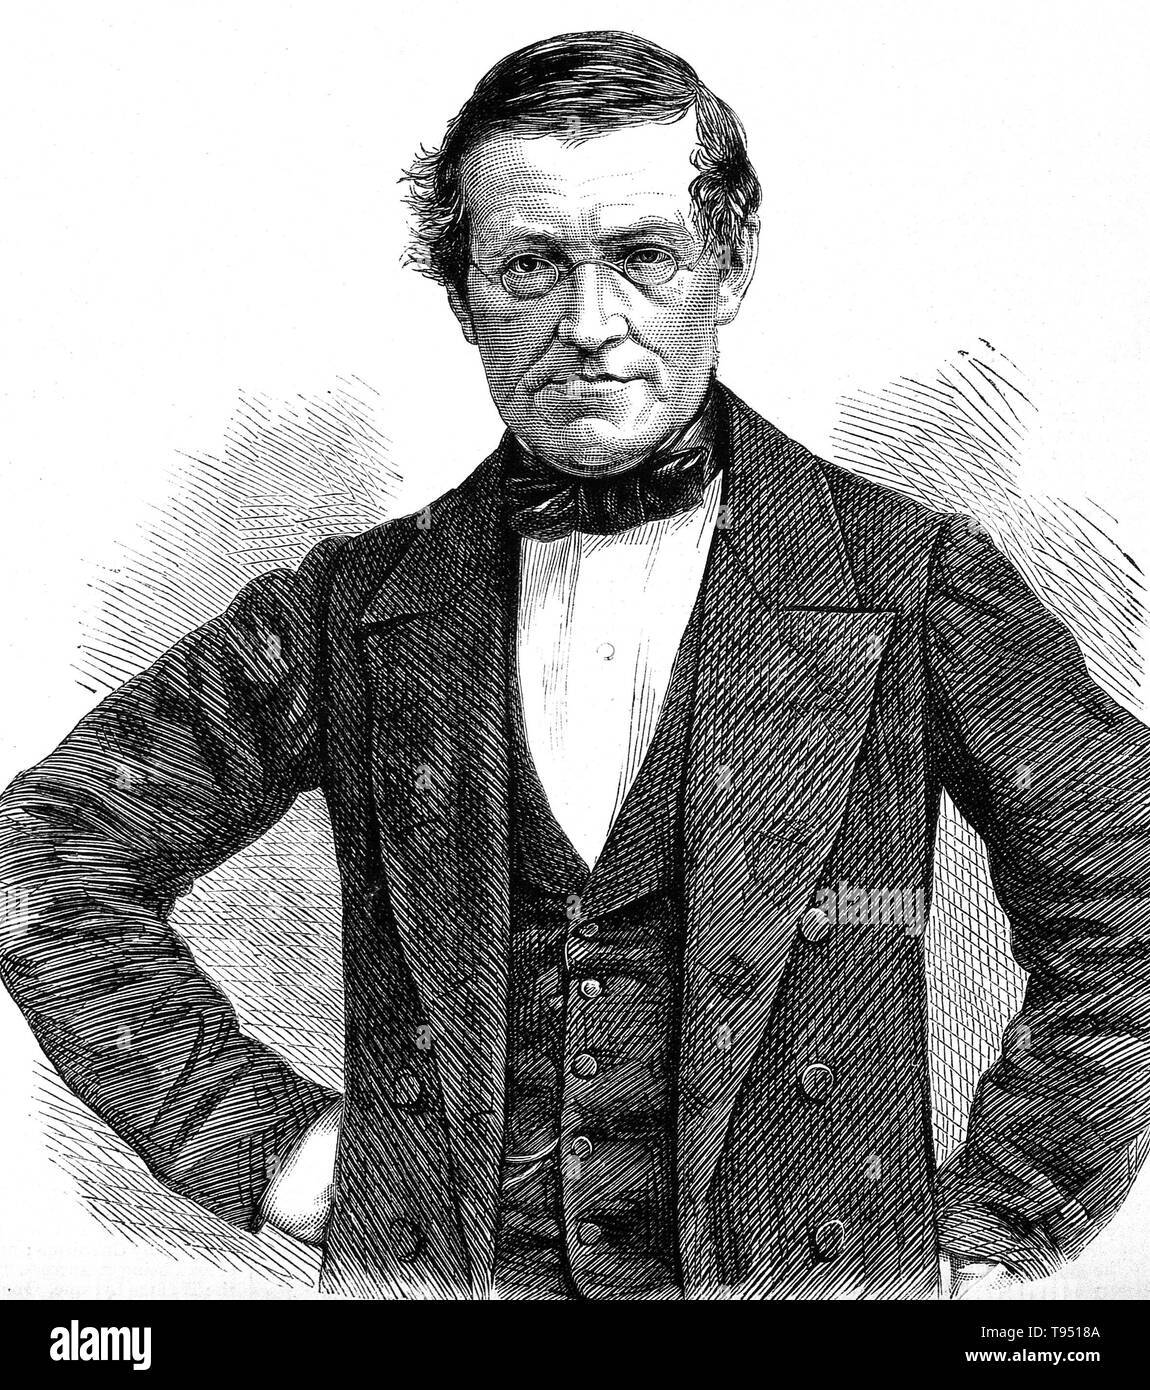 Sir Charles Wheatstone, la gravure sur bois. Charles Wheatstone (1802-1875) était un scientifique anglais et inventeur de plusieurs percées scientifiques de l'ère victorienne, y compris l'anglais concertina, le stéréoscope (un appareil pour l'affichage des images en trois dimensions), et l'algorithme de Playfair (une technique de cryptage). Cependant, Wheatstone est surtout connu pour ses contributions à l'élaboration de Le pont de Wheatstone, à l'origine inventé par Samuel Hunter Christie, qui est utilisé pour mesurer une résistance électrique inconnu, et comme une figure majeure dans le développement de la télégraphie. Banque D'Images